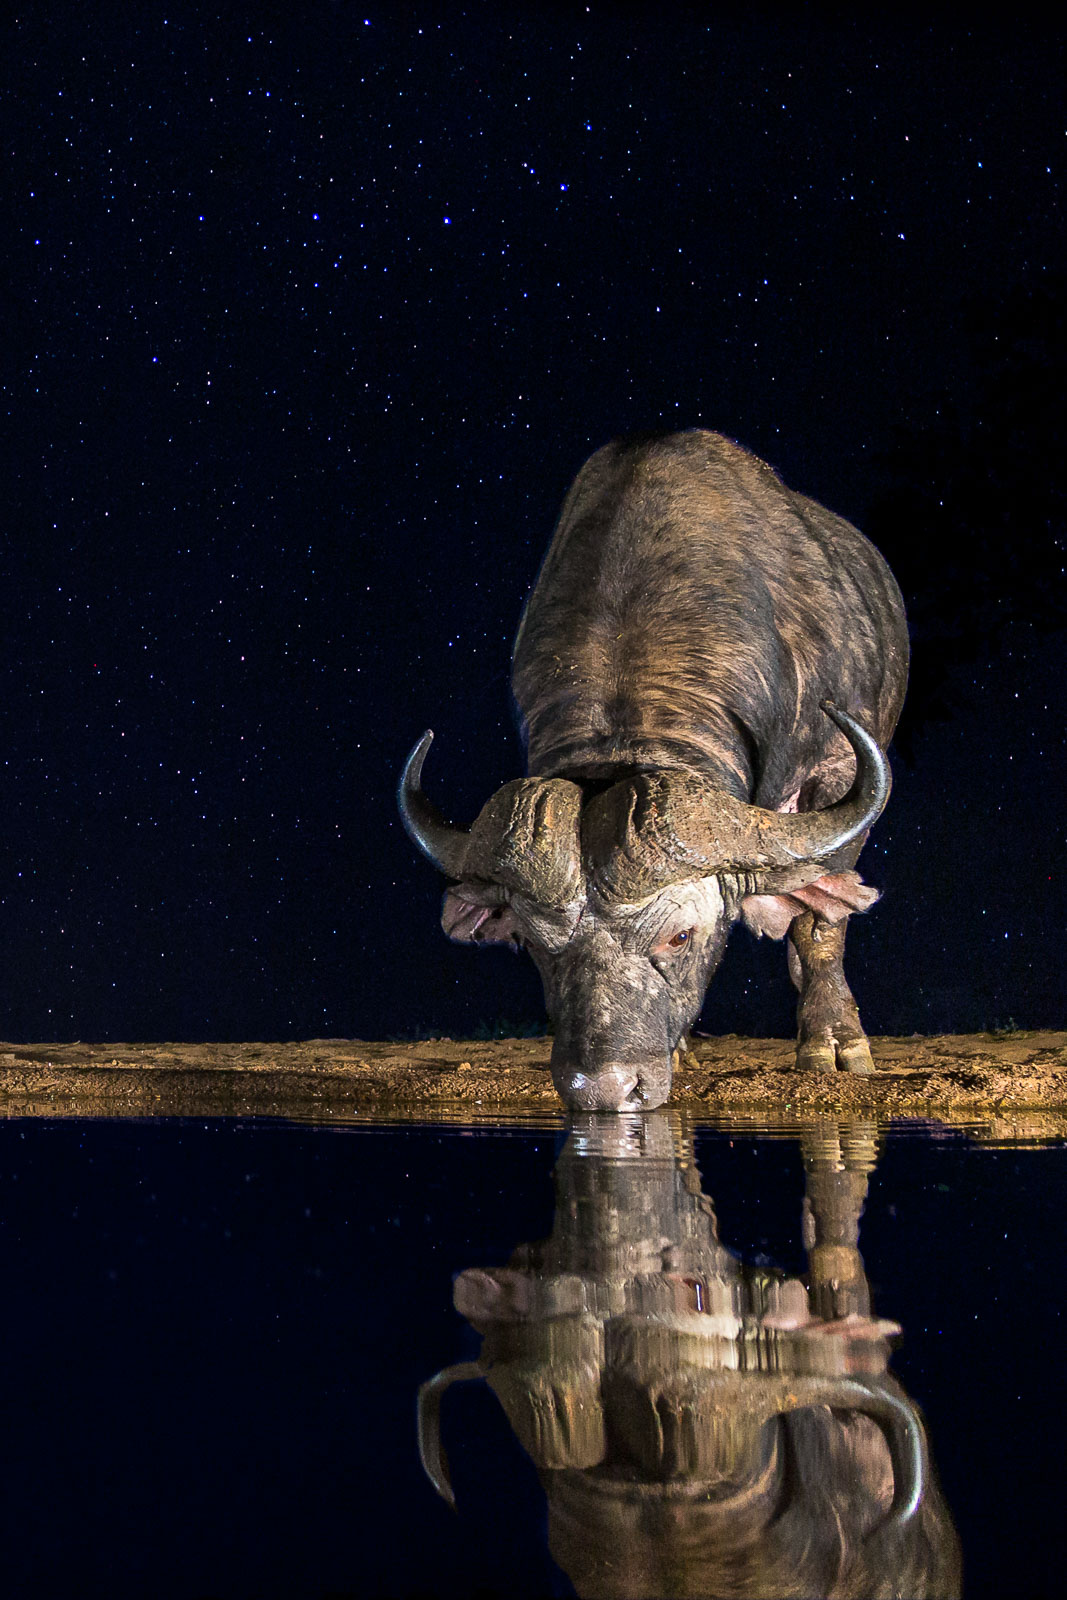 Afrikansk buffel under stjärnhimmel